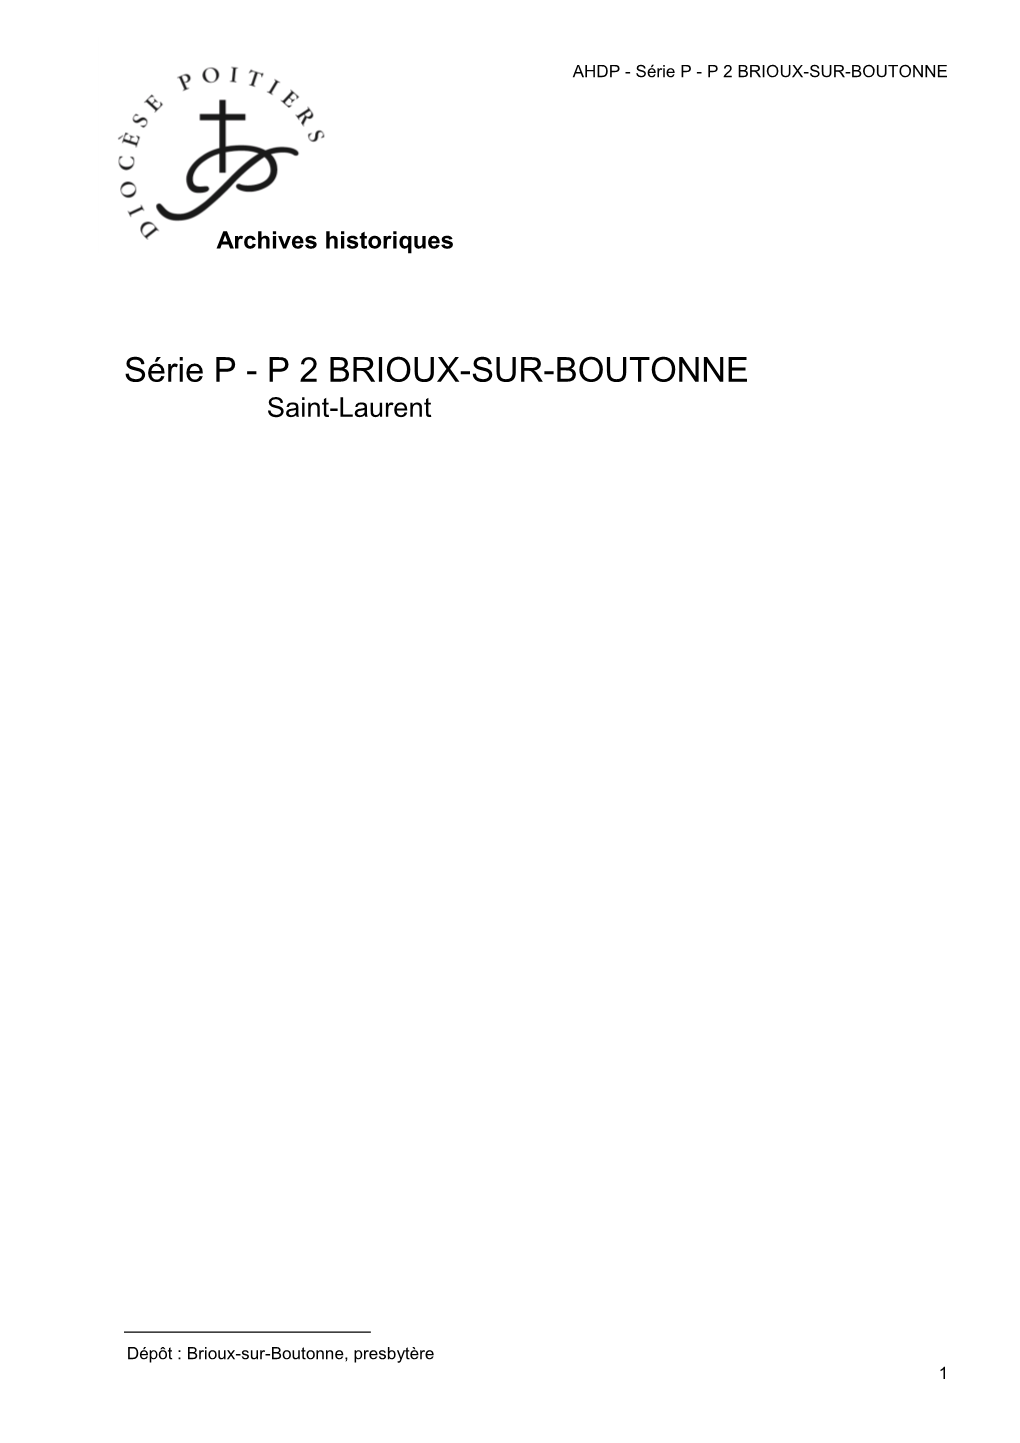 P 2 Brioux-Sur-Boutonne